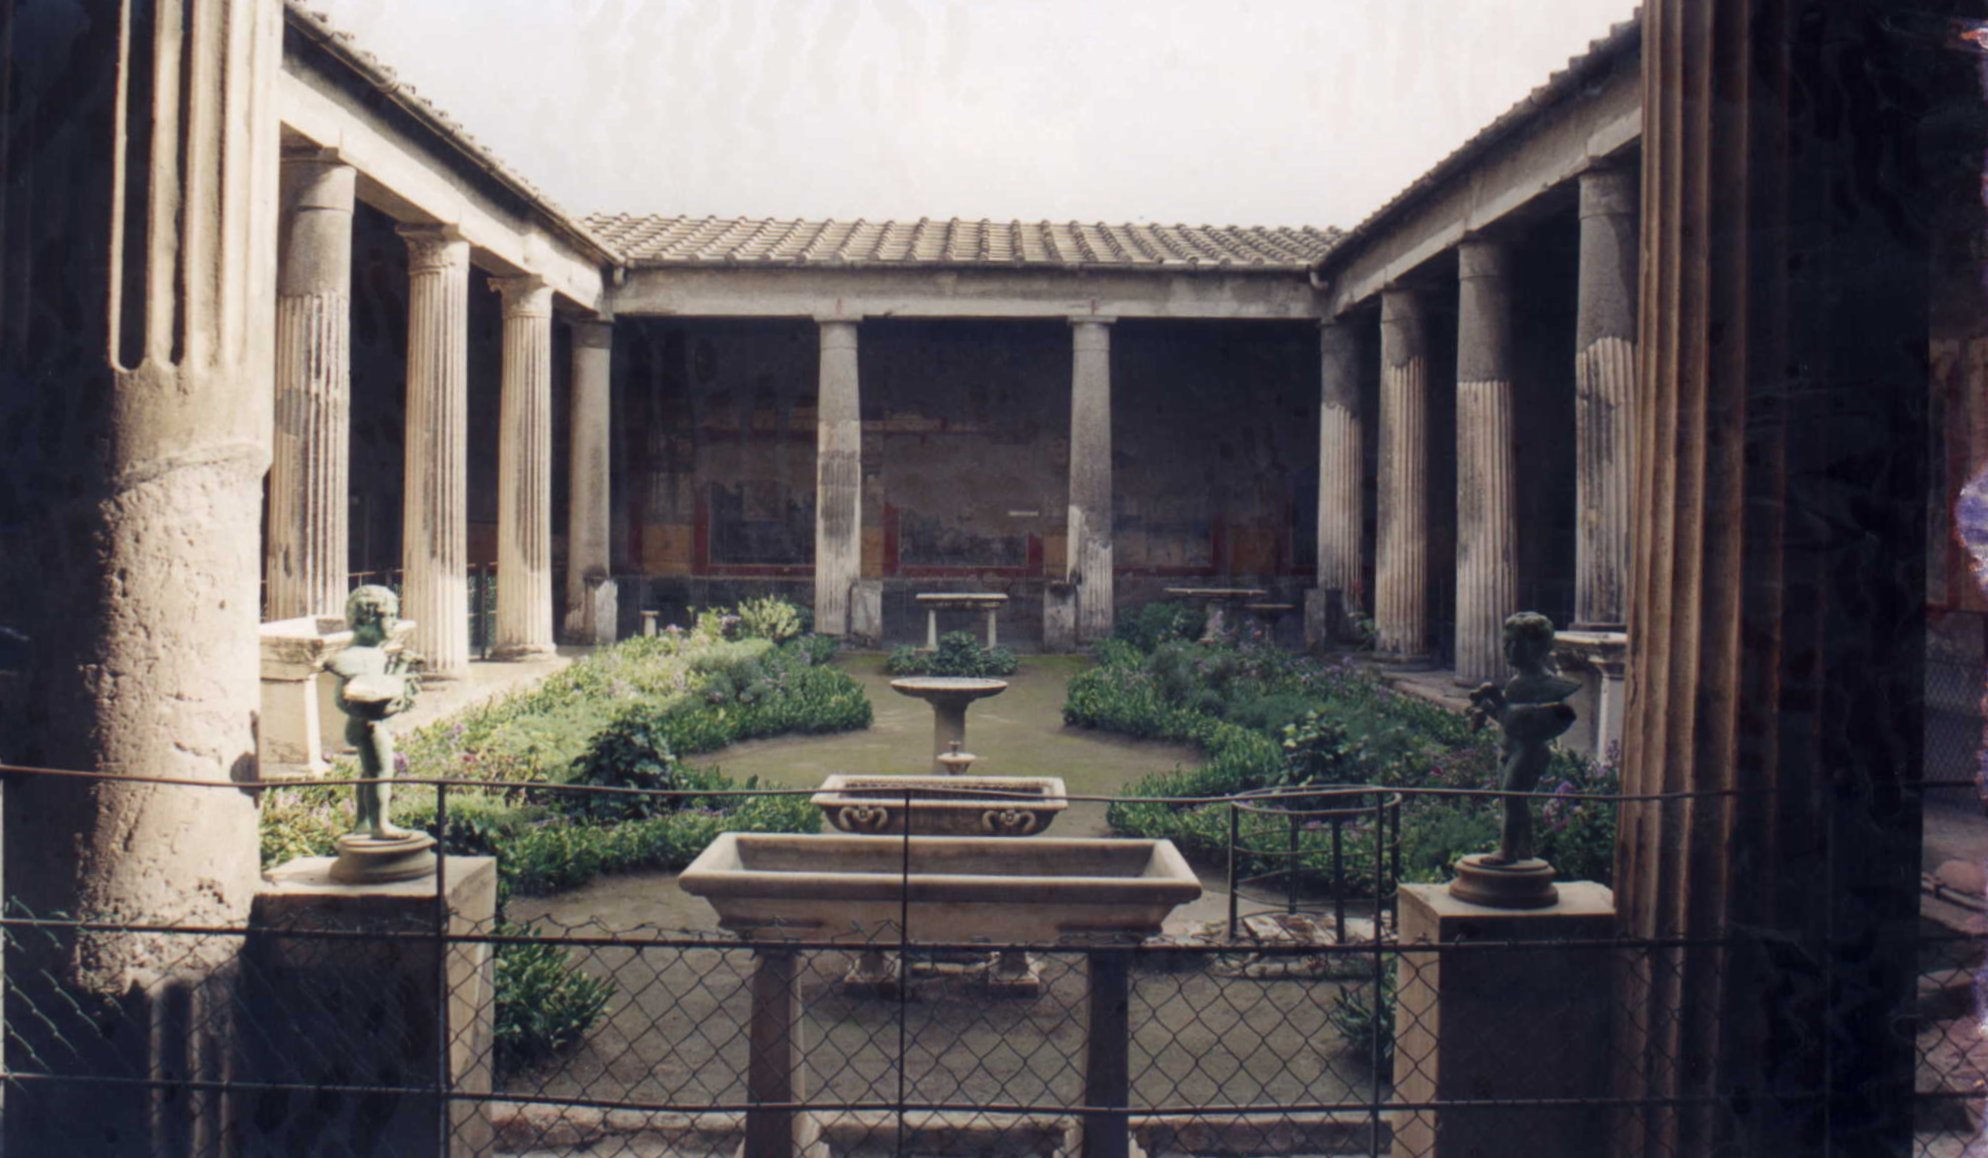 Le péristyle est une galerie de colonnes qui entoure un édifice. © Patricio Iorente, CC BY-SA 2.5, Wikimedia Commons